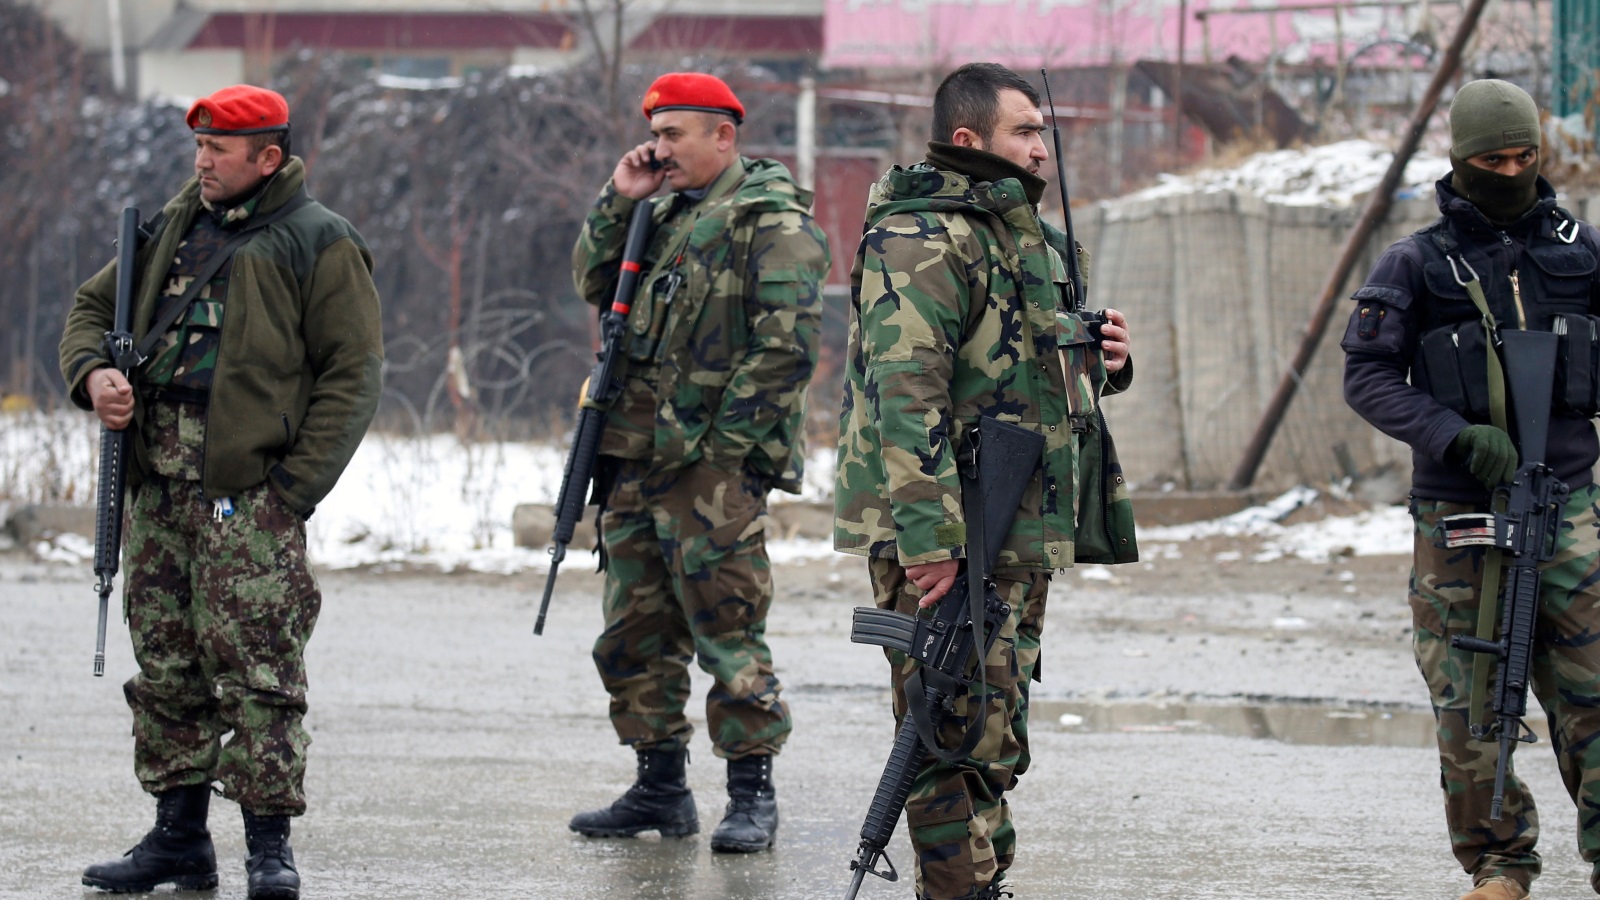 تقرير البنتاغون: الوضع الميداني يظهر مؤشرات قليلة جدا على حصول تقدم على الصعيد الأمني بأفغانستان(رويترز)